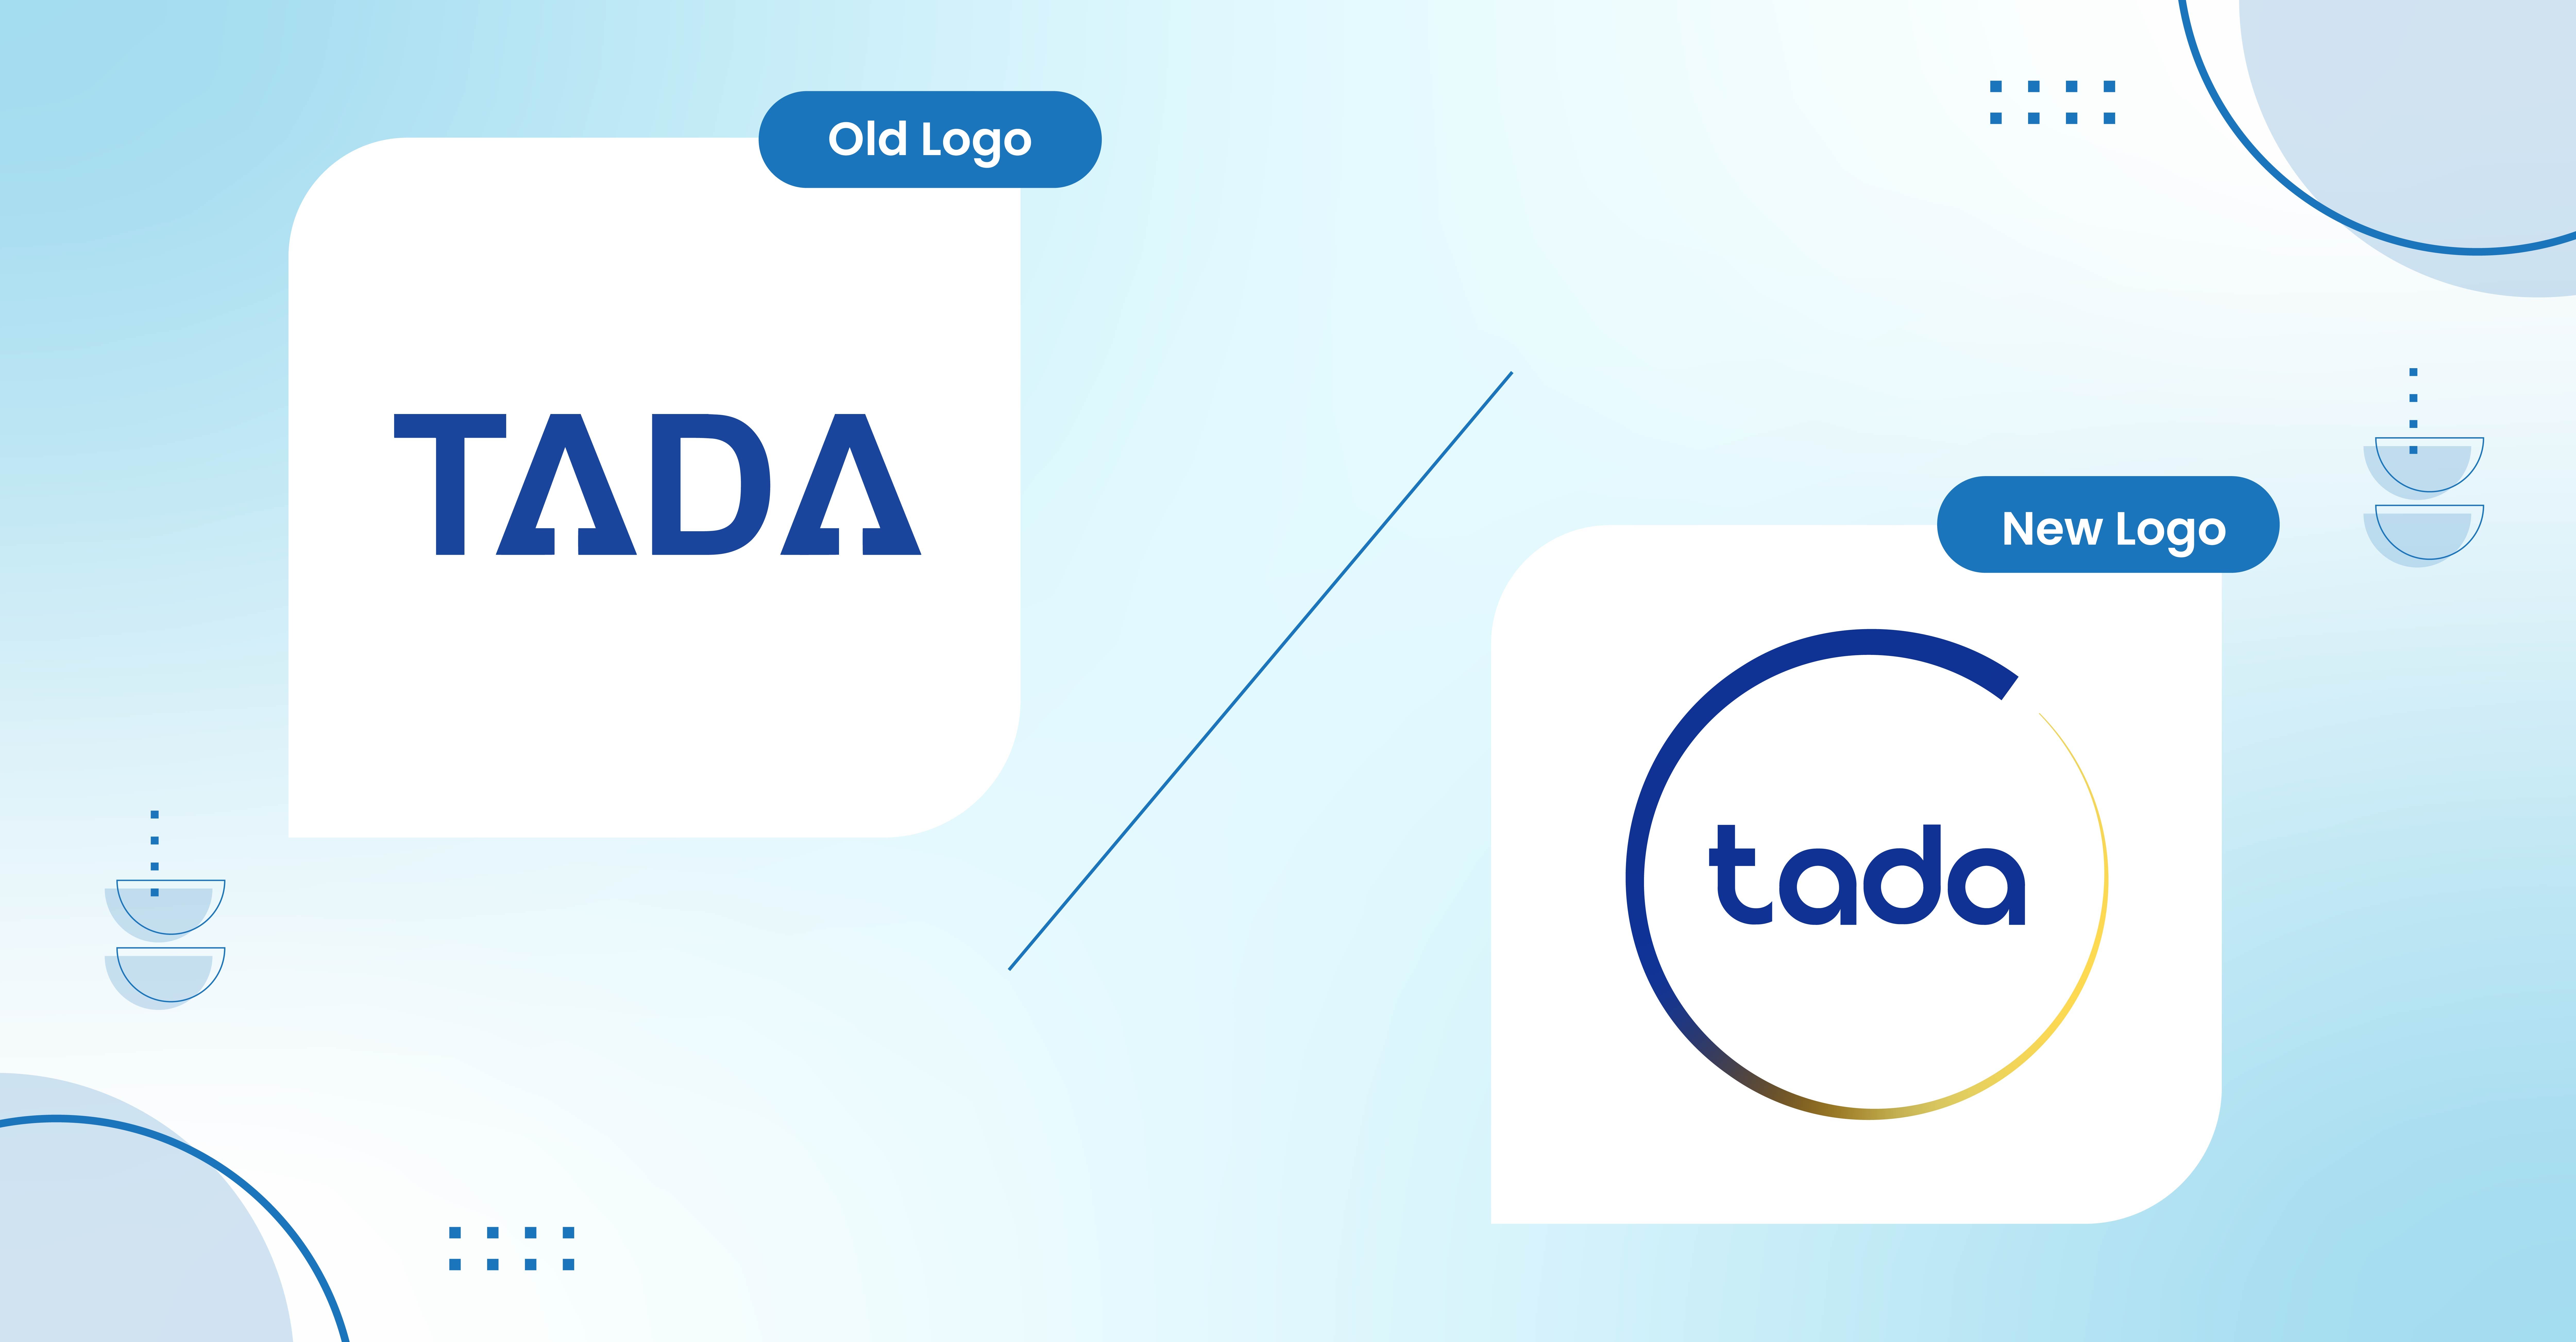 Tada new logo